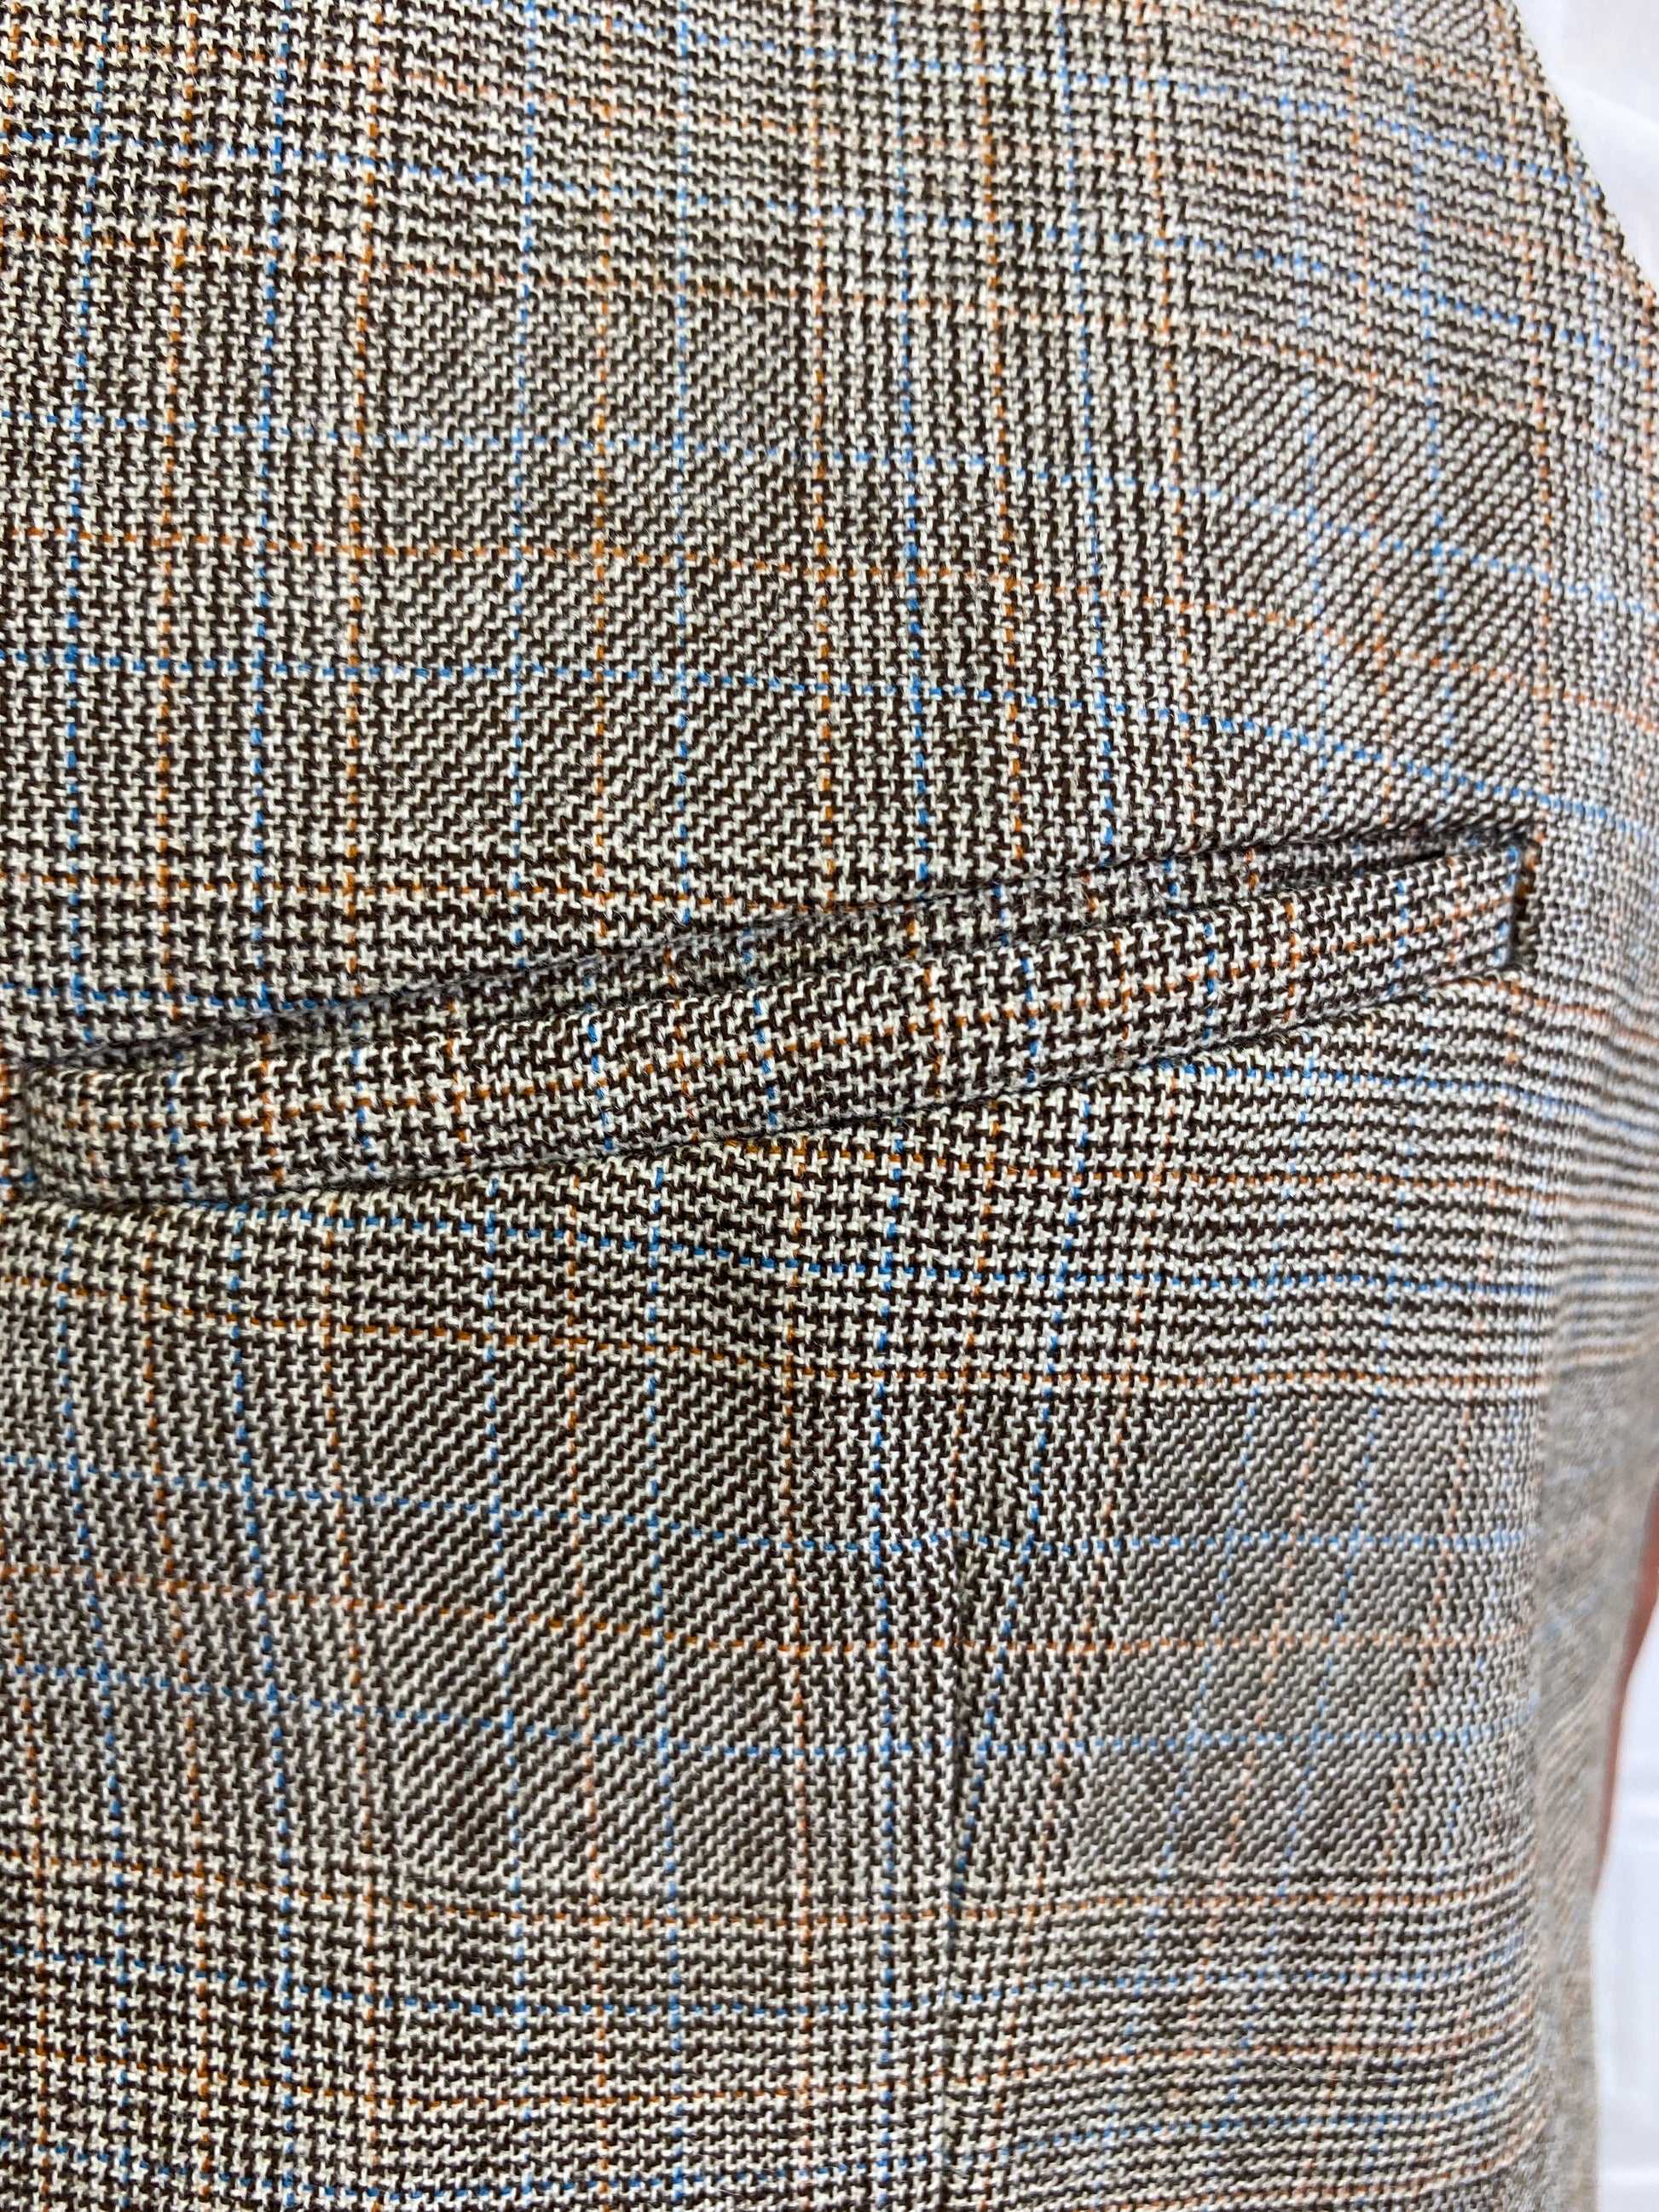 Vintage 1980s Men's Brown Plaid Waistcoat/ Vest, C40